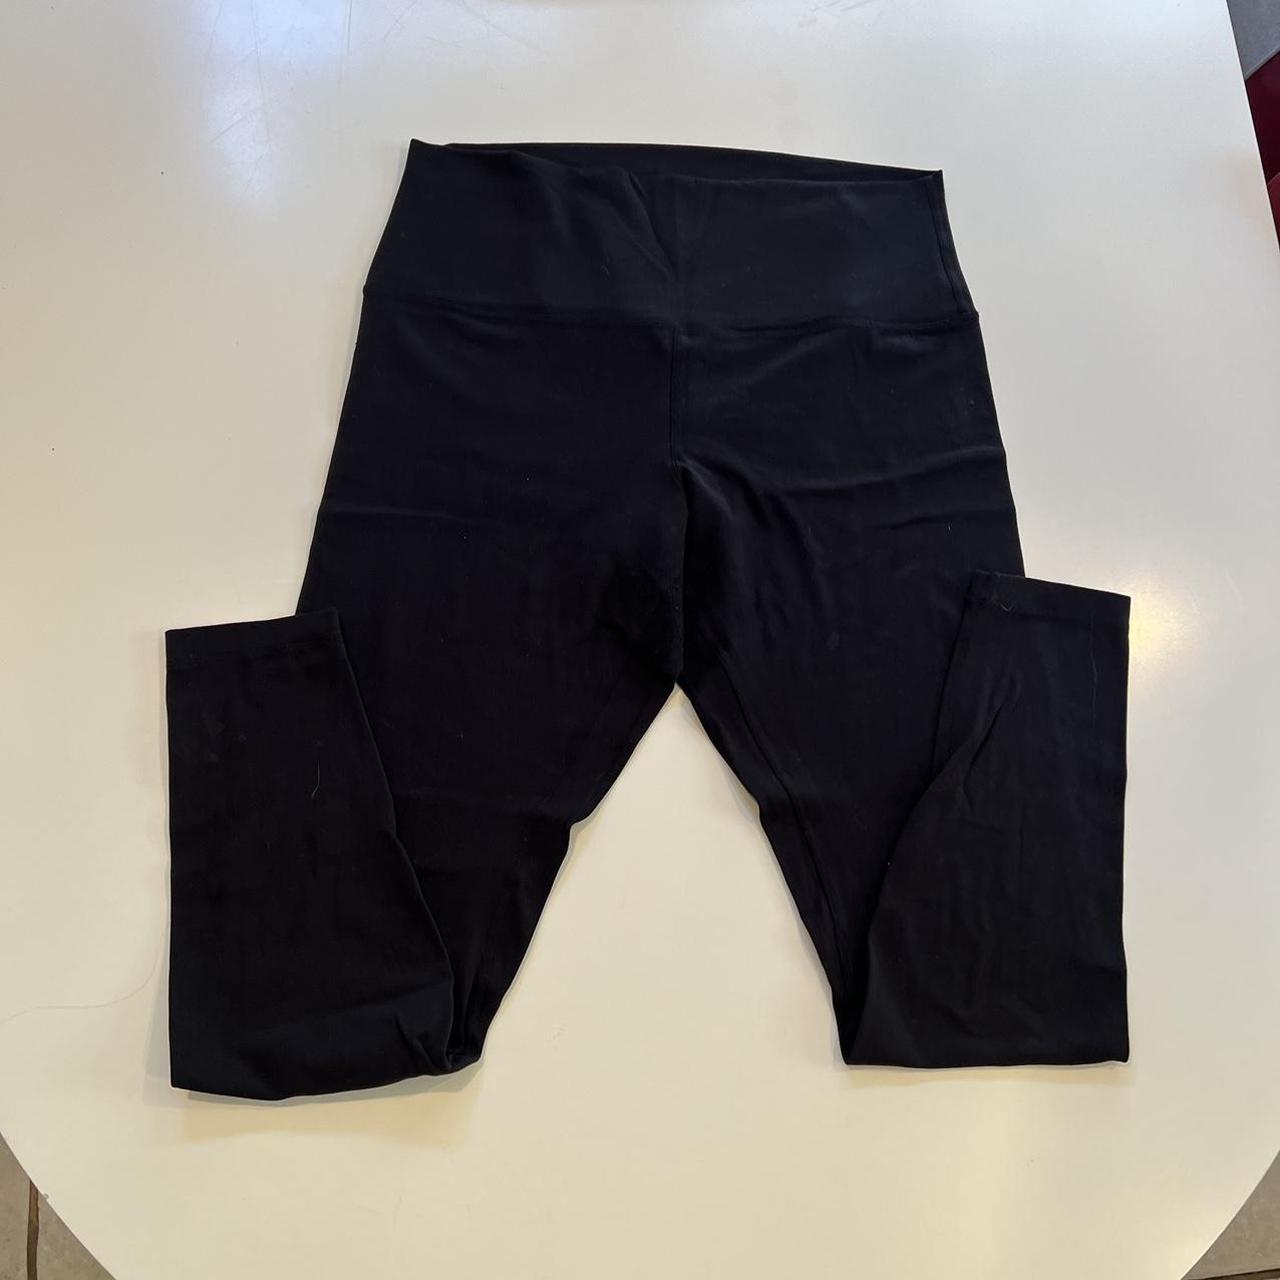 Black lululemon leggings size 12, Some pilling as